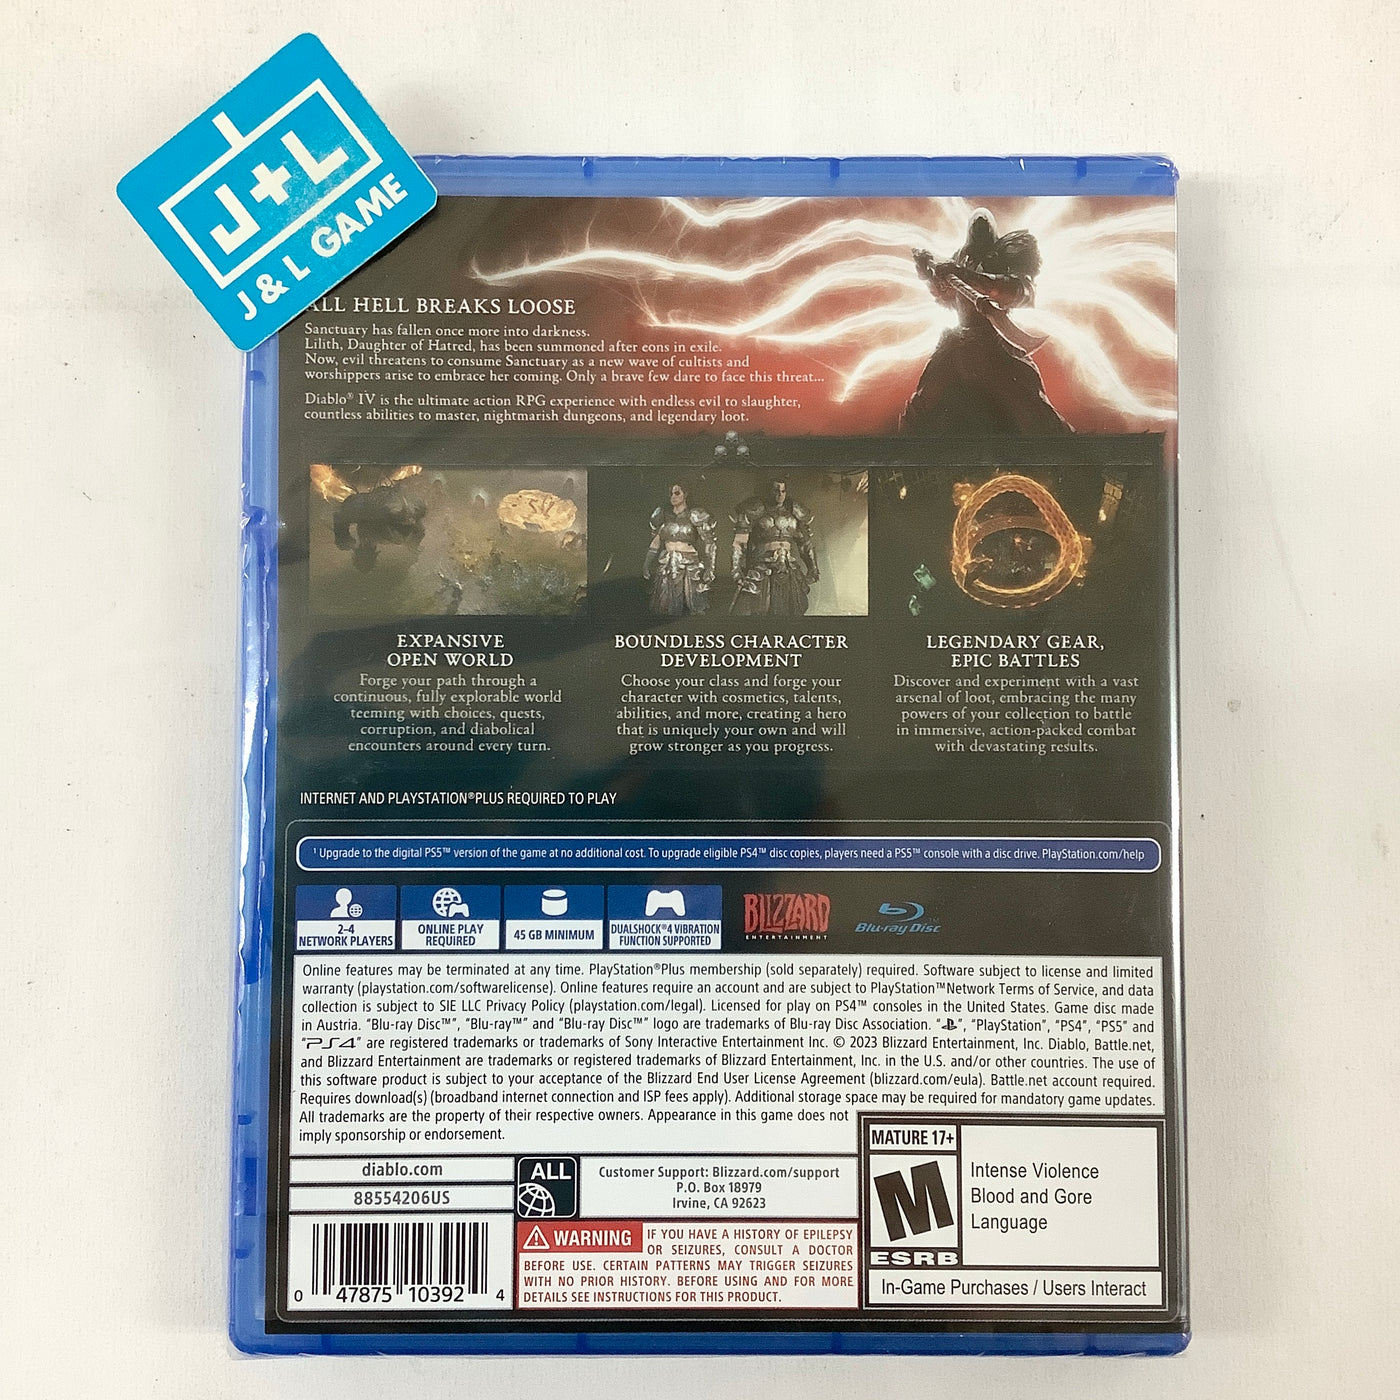 Diablo IV - (PS4) PlayStation 4